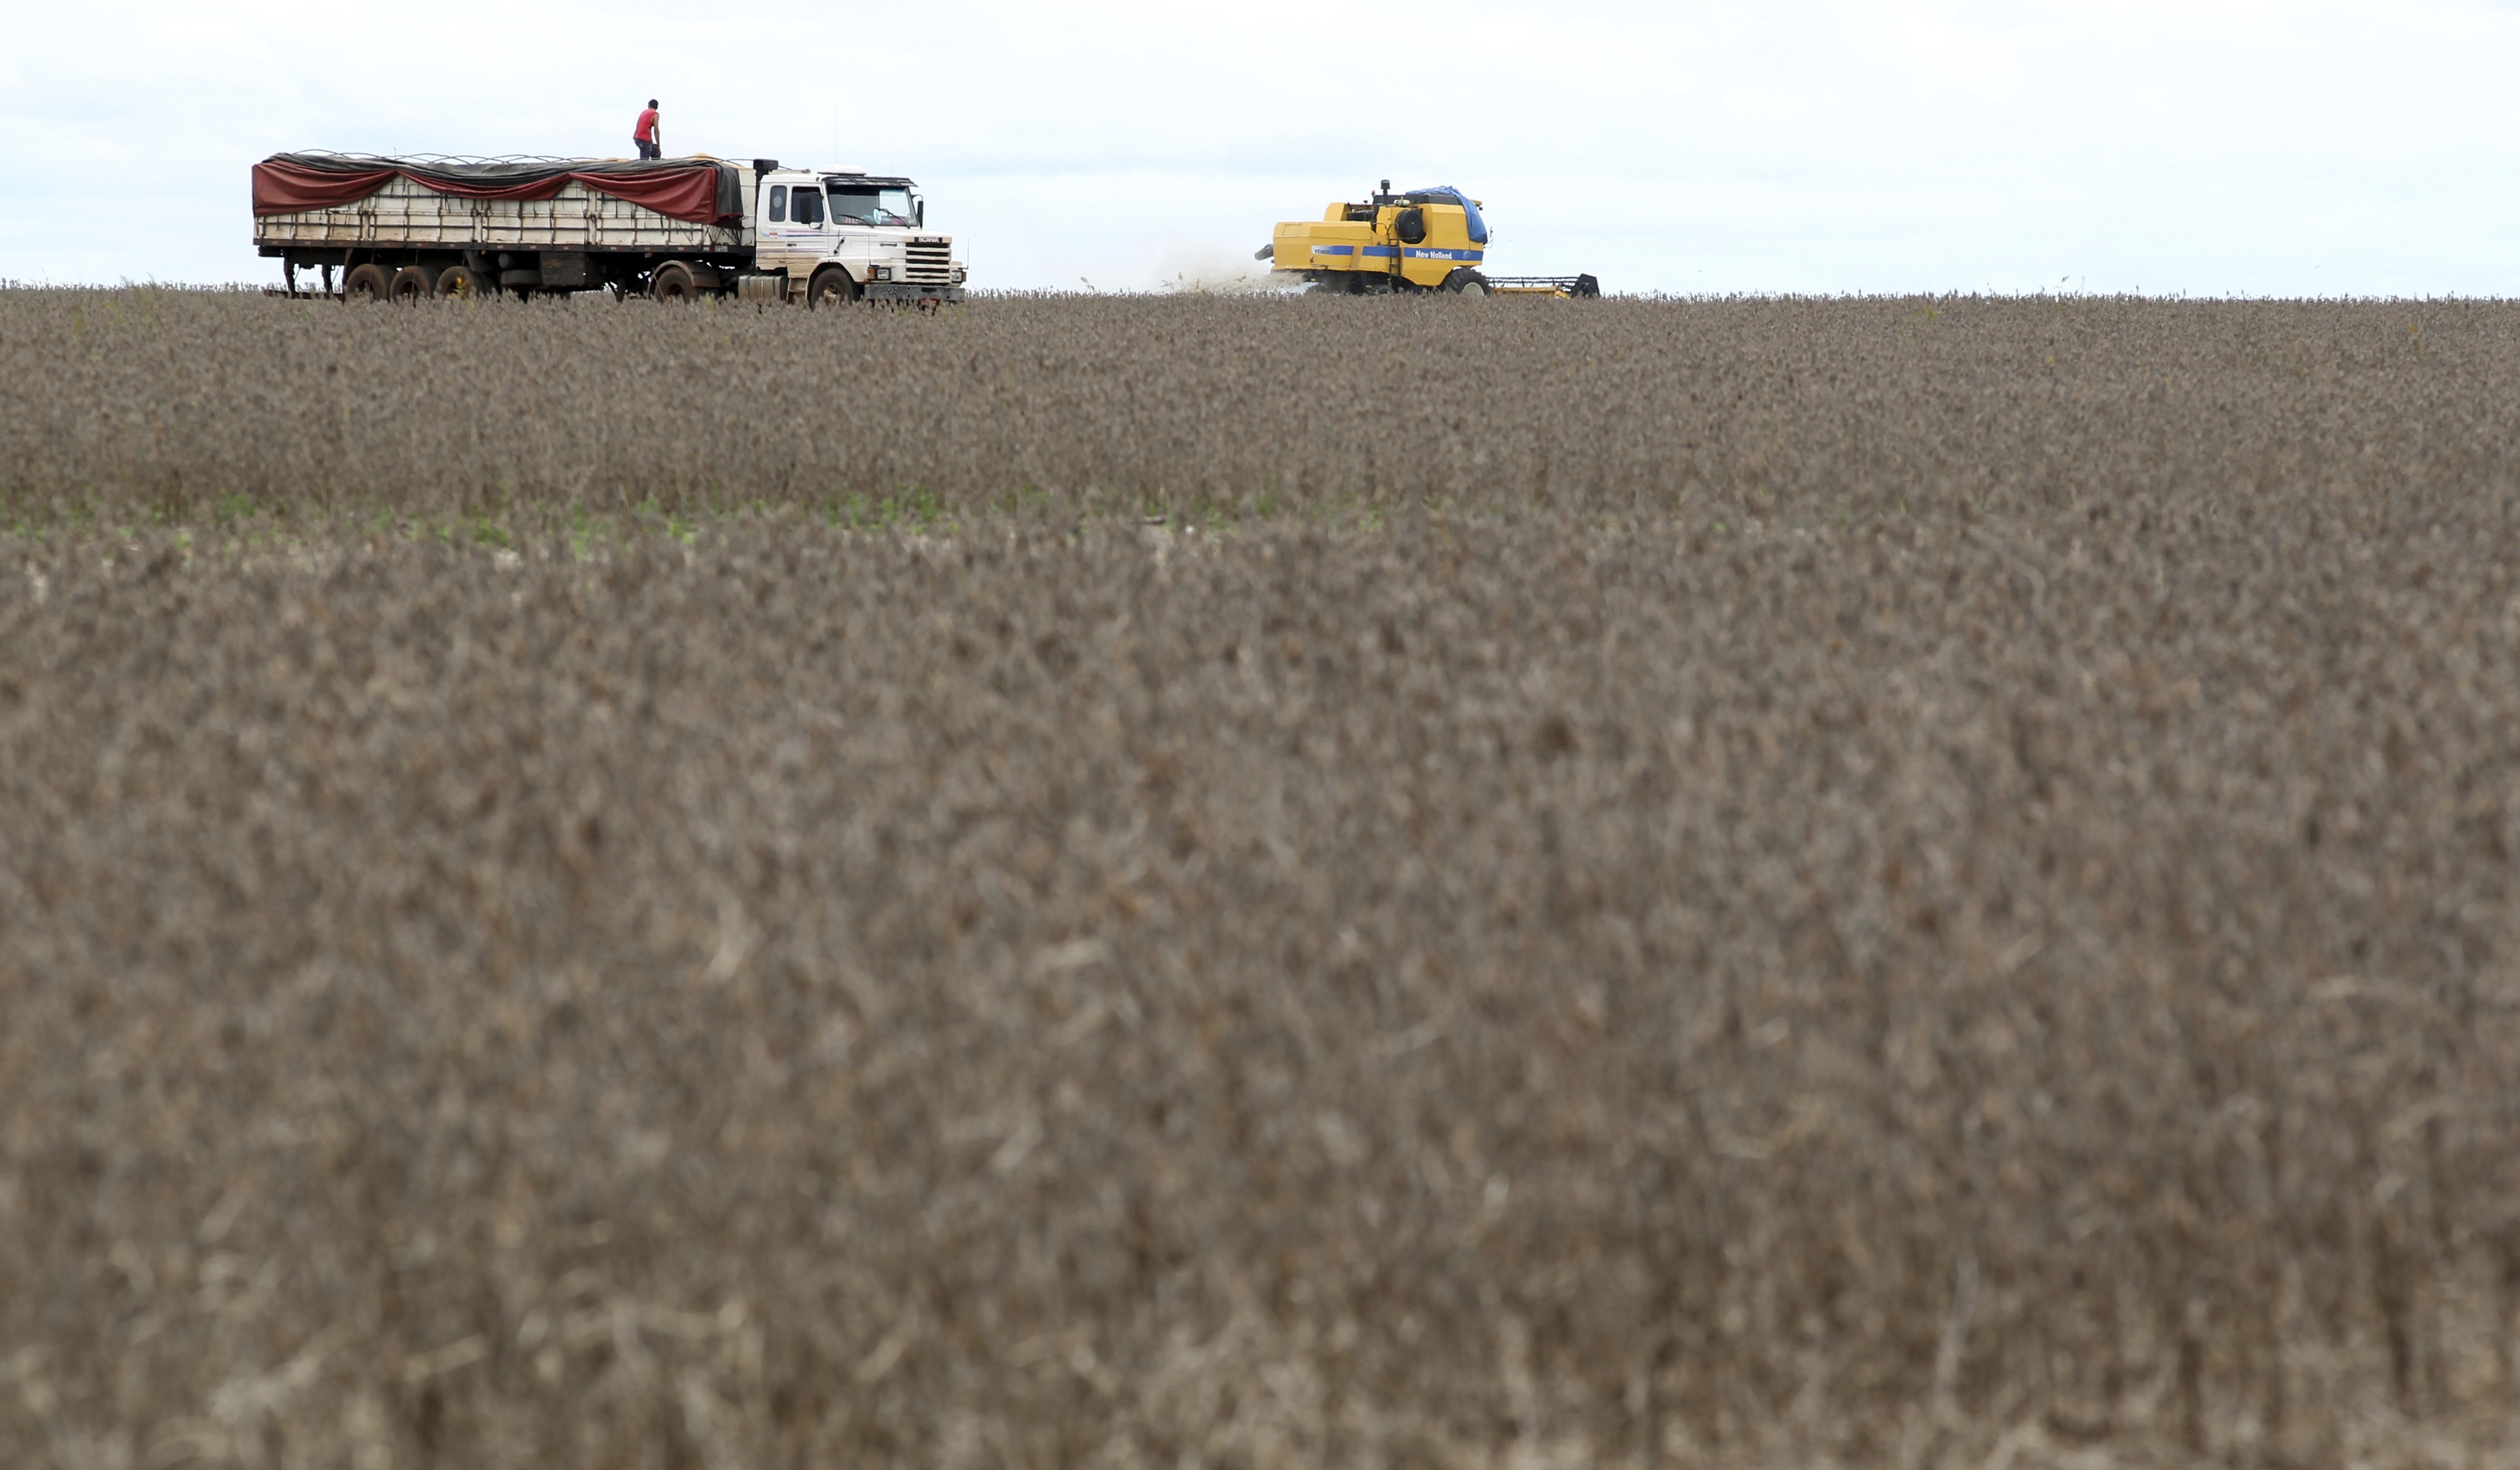 Caminhão é carregado com soja em fazenda no Brasil (Foto: Paulo Whitaker/Reuters)